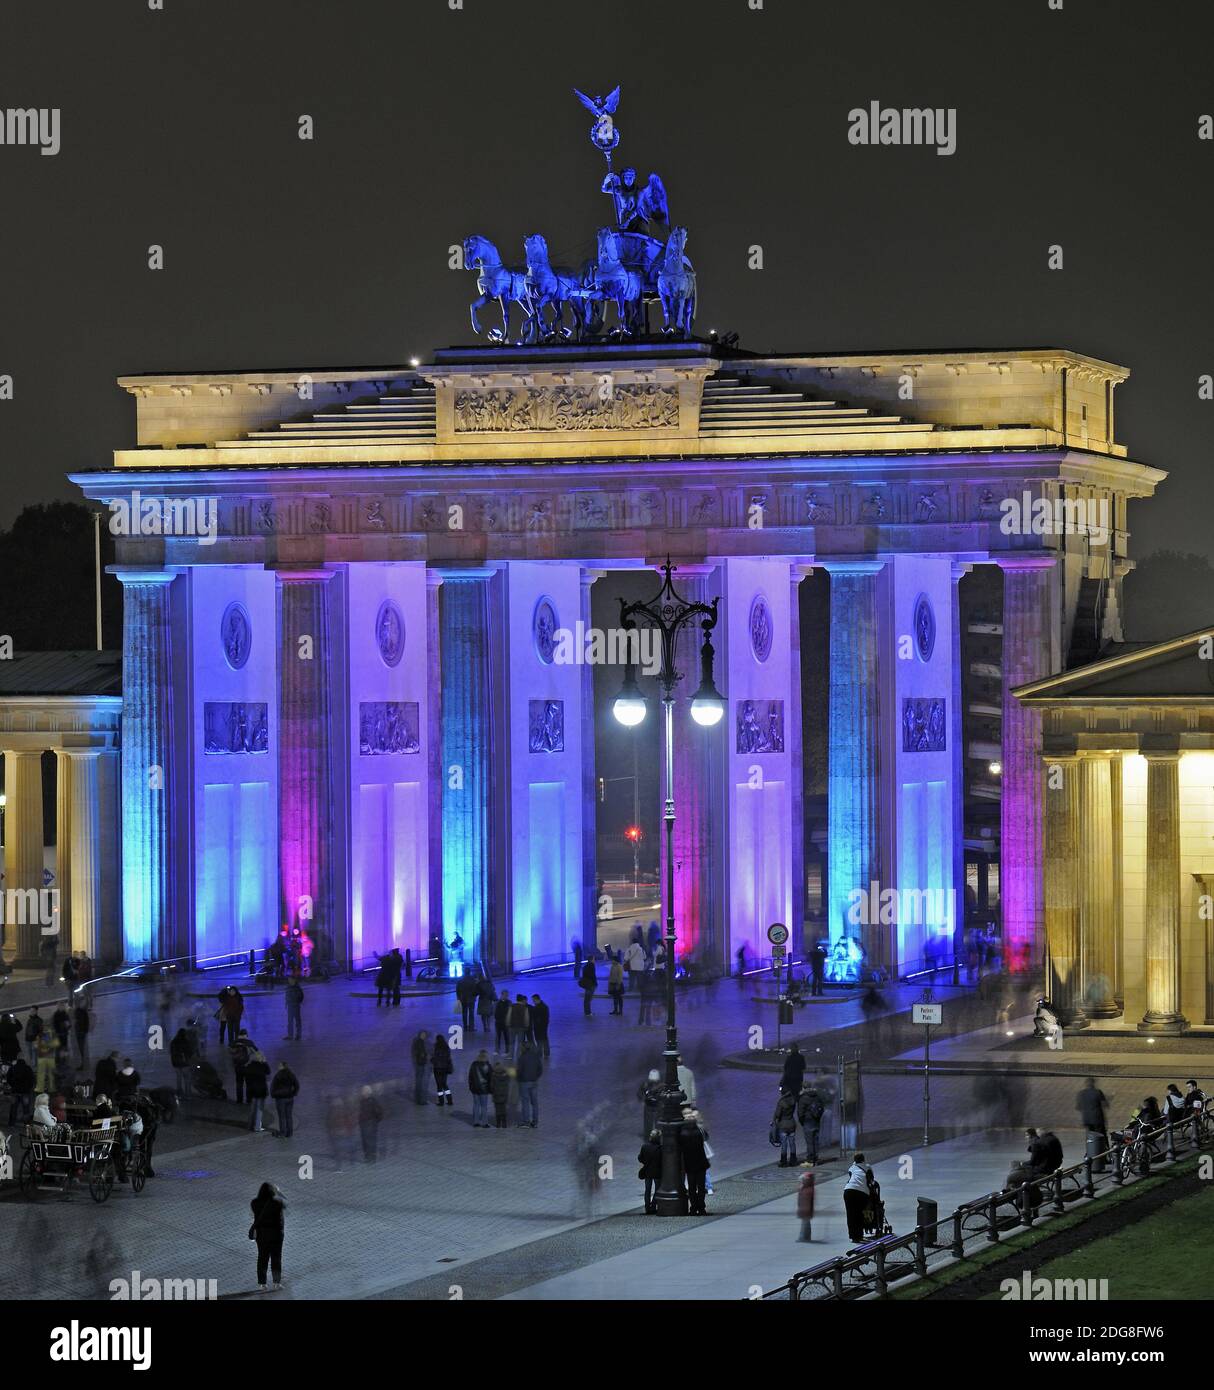 Brandenburger Tor am Pariser Platz, Berlin, Deutschland, Europa, illuminiert zum Festival of Lights Stock Photo